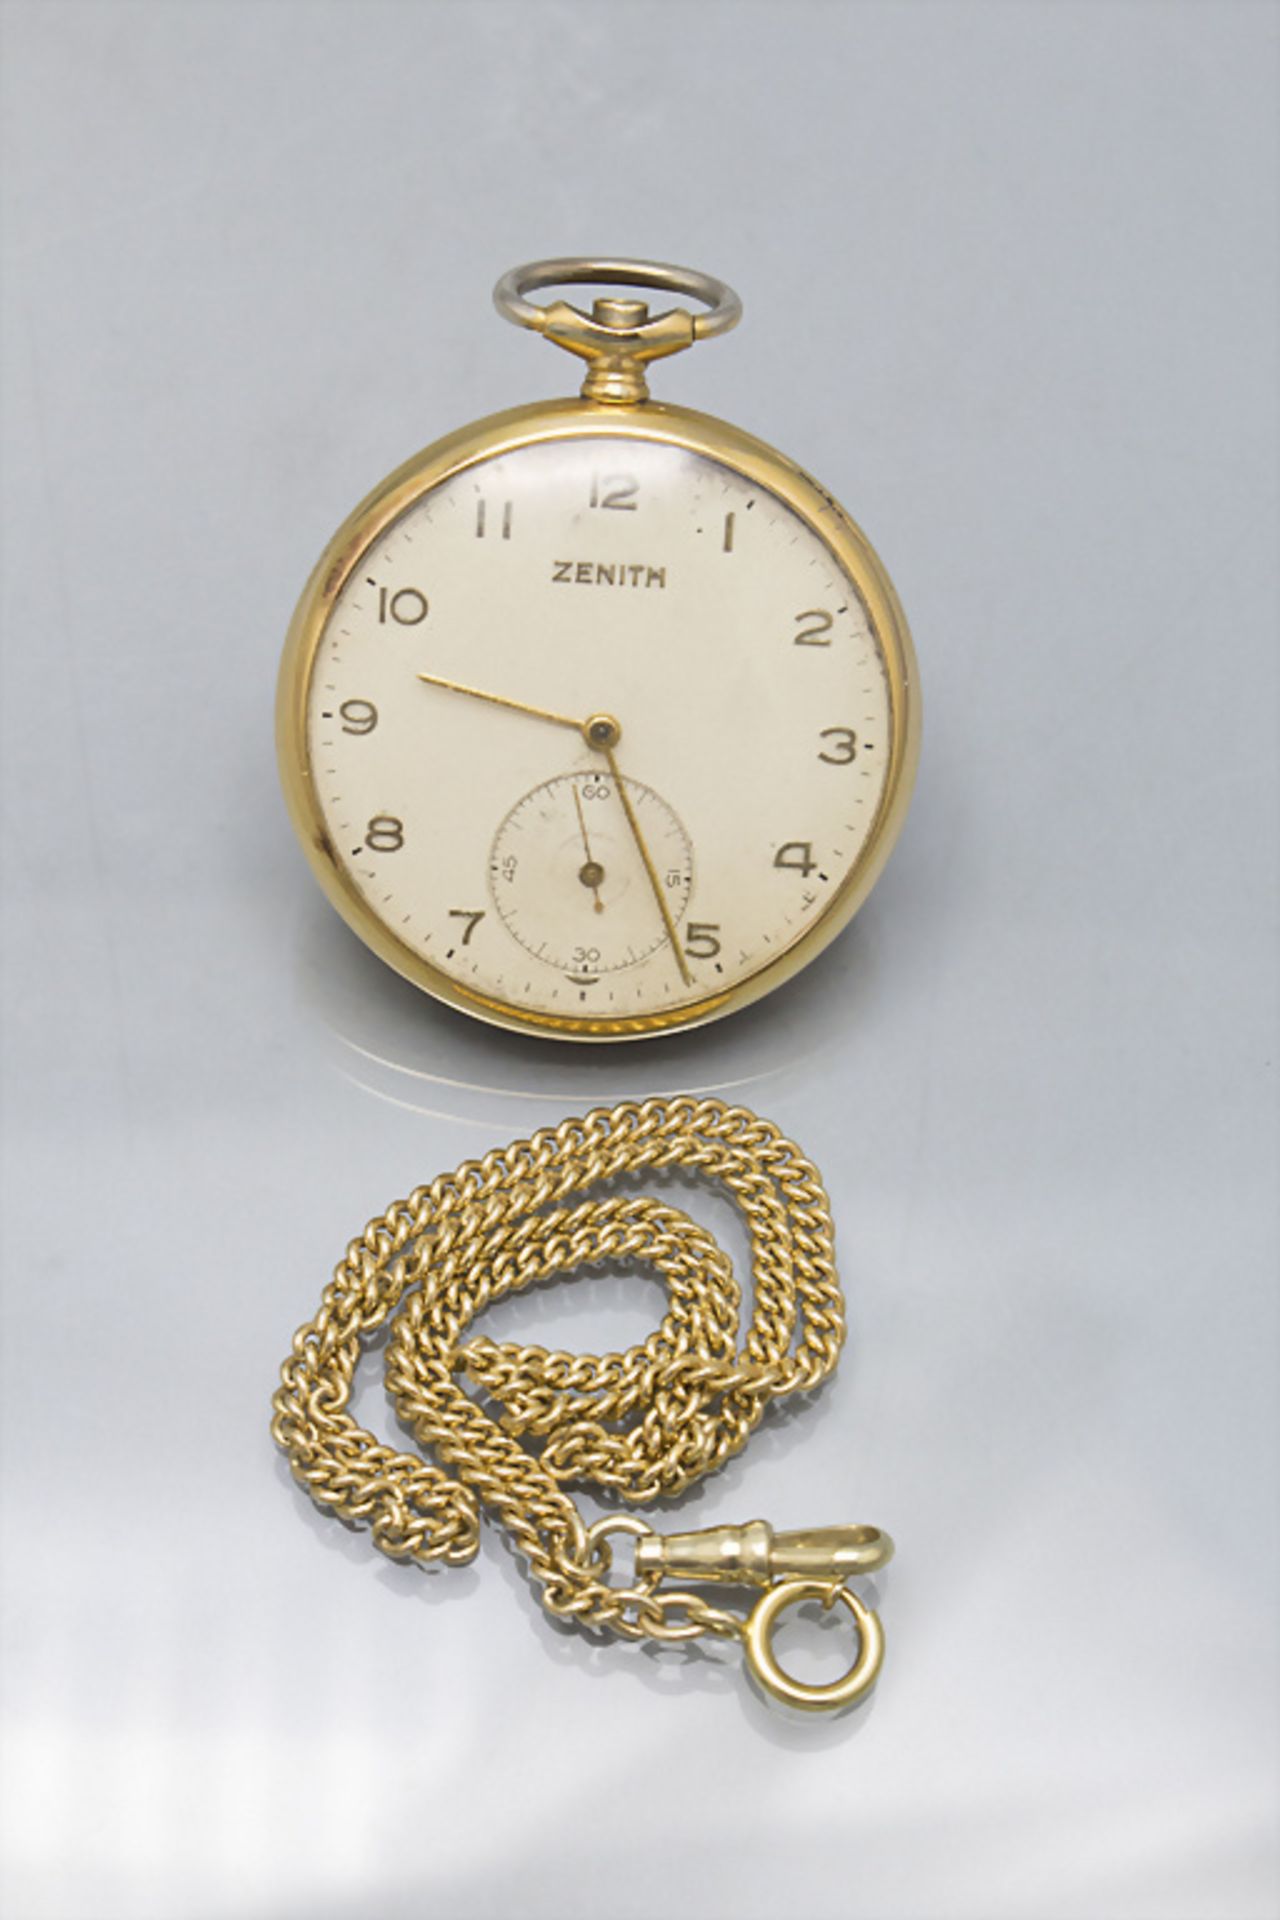 Taschenuhr mit 14 Kt Gold Kette / A pocket watch with a 14 ct gold chain, Zenith, Swiss, um 1950 - Image 2 of 6